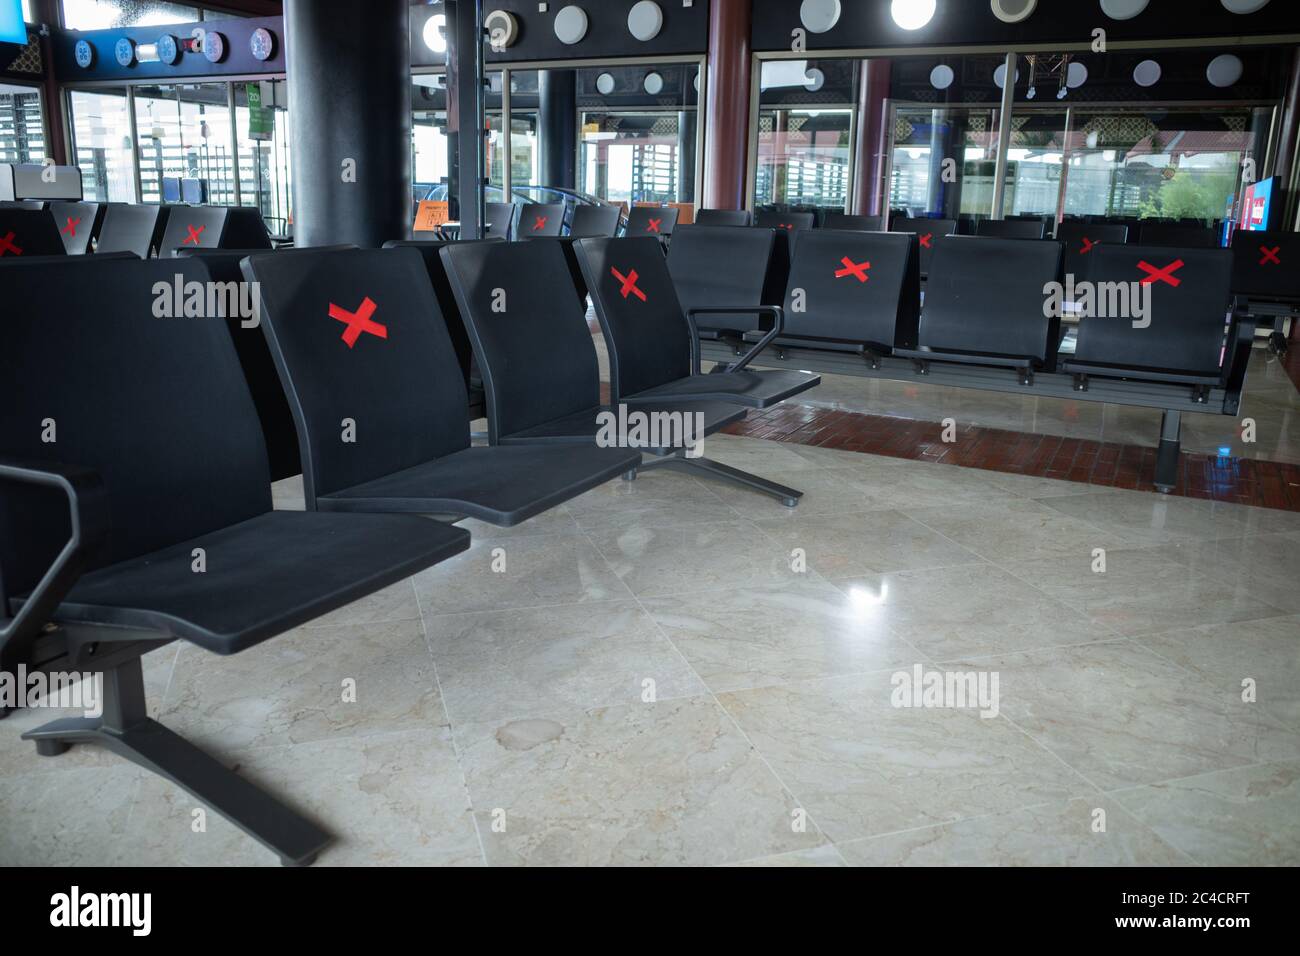 GIACARTA, 21 MARZO 2020: Le sedie segnate per la distanza sociale a Halim Perdana Kusuma a Giacarta il 21 marzo 2020. Foto Stock